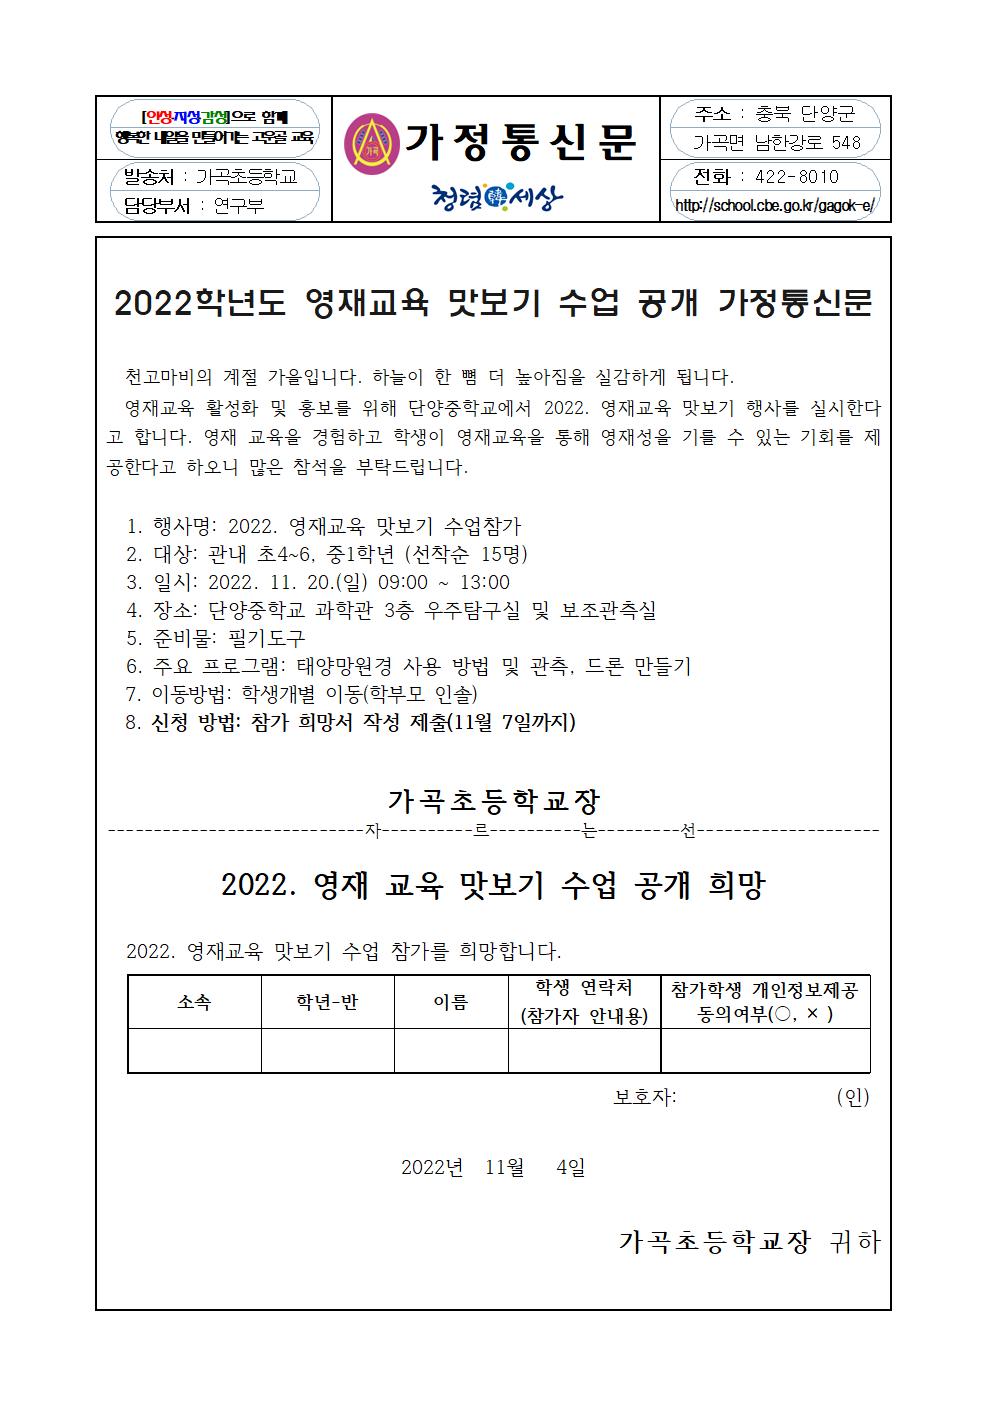 2022학년도 영재교육 맛보기 수업 공개 가정통신문001